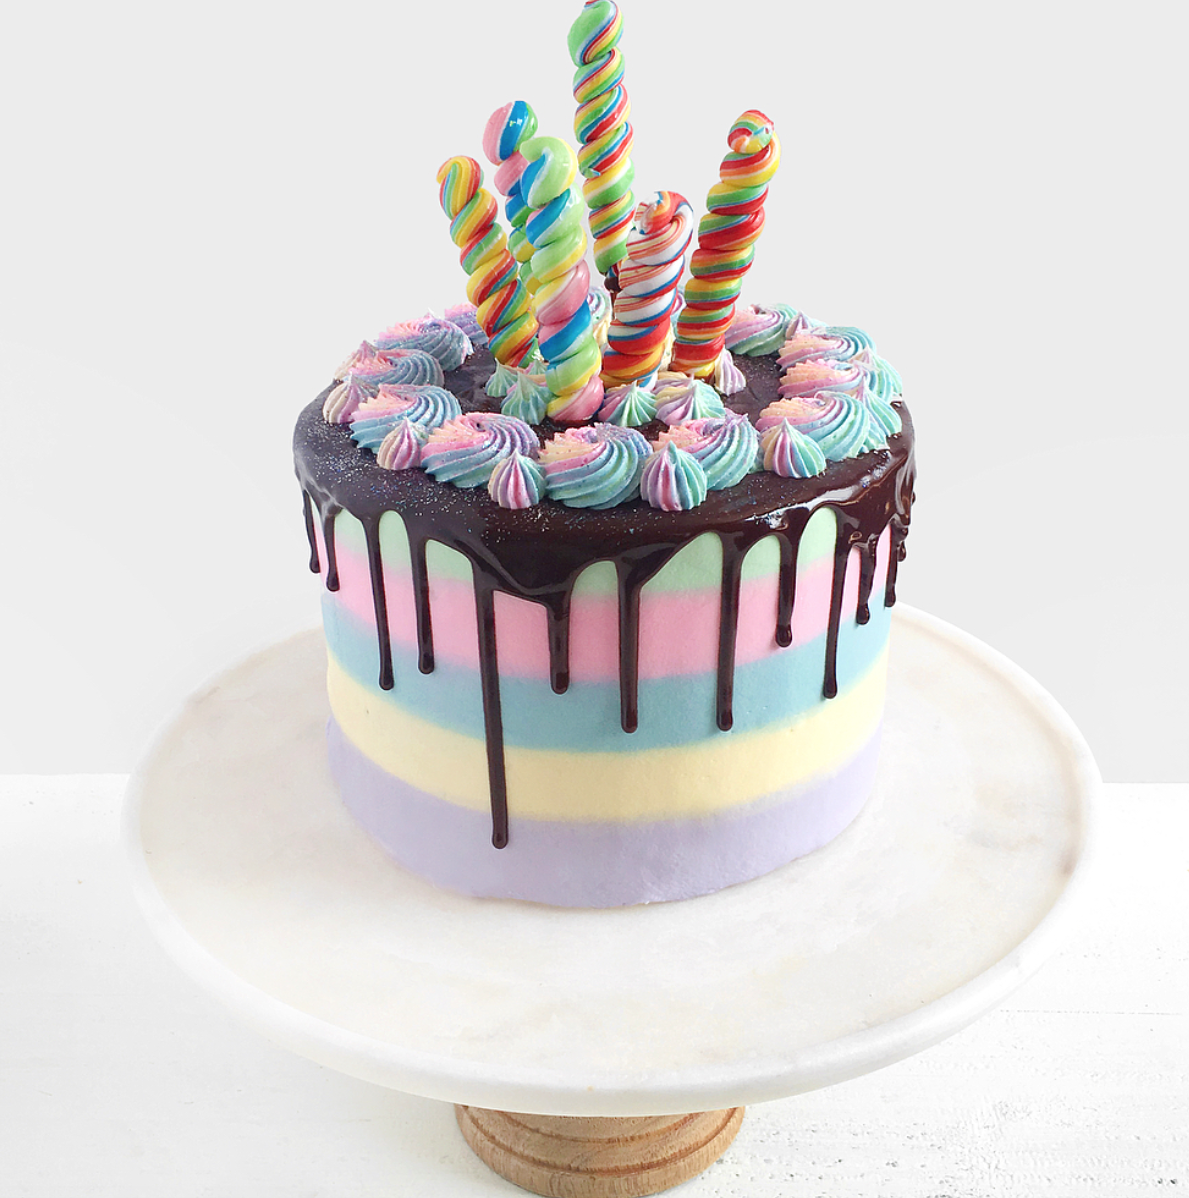 Whipping Cream Cake - My Baking Addiction